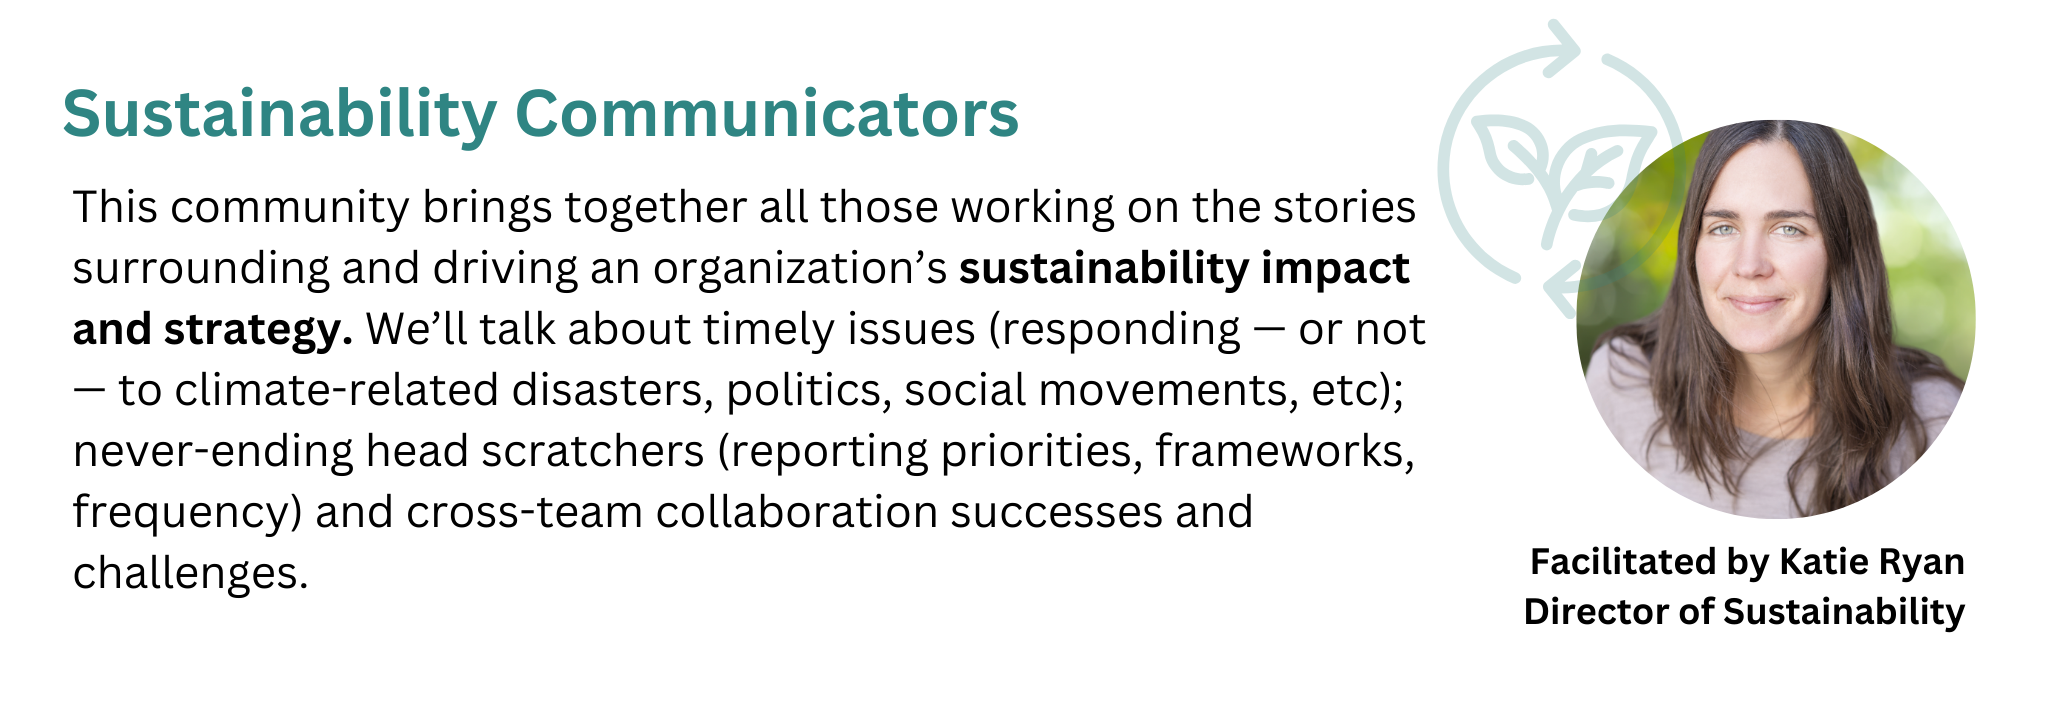 Sustainability Communicators